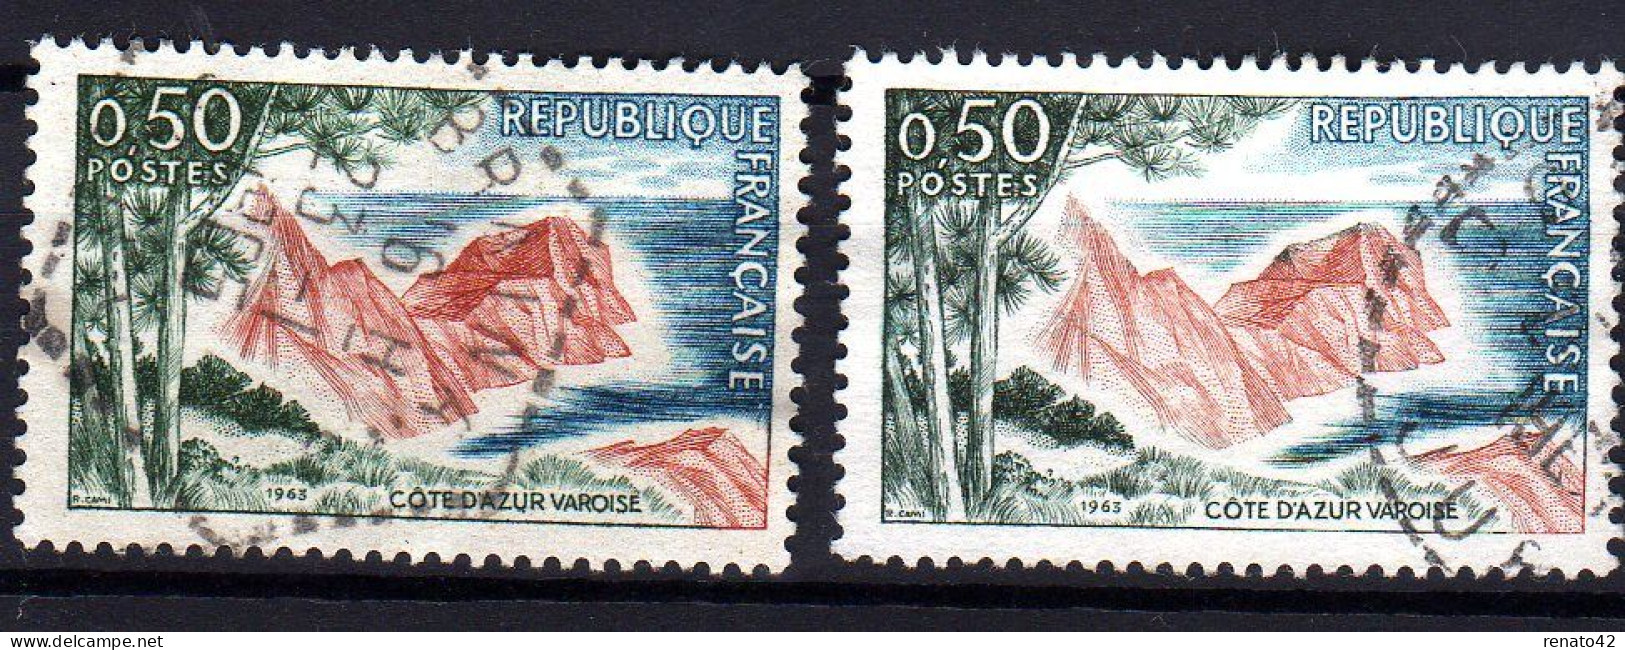 N° 1391 OBLITERE : TEINTES PLUS CLAIRES SUR LE 2ème TIMBRE - Used Stamps